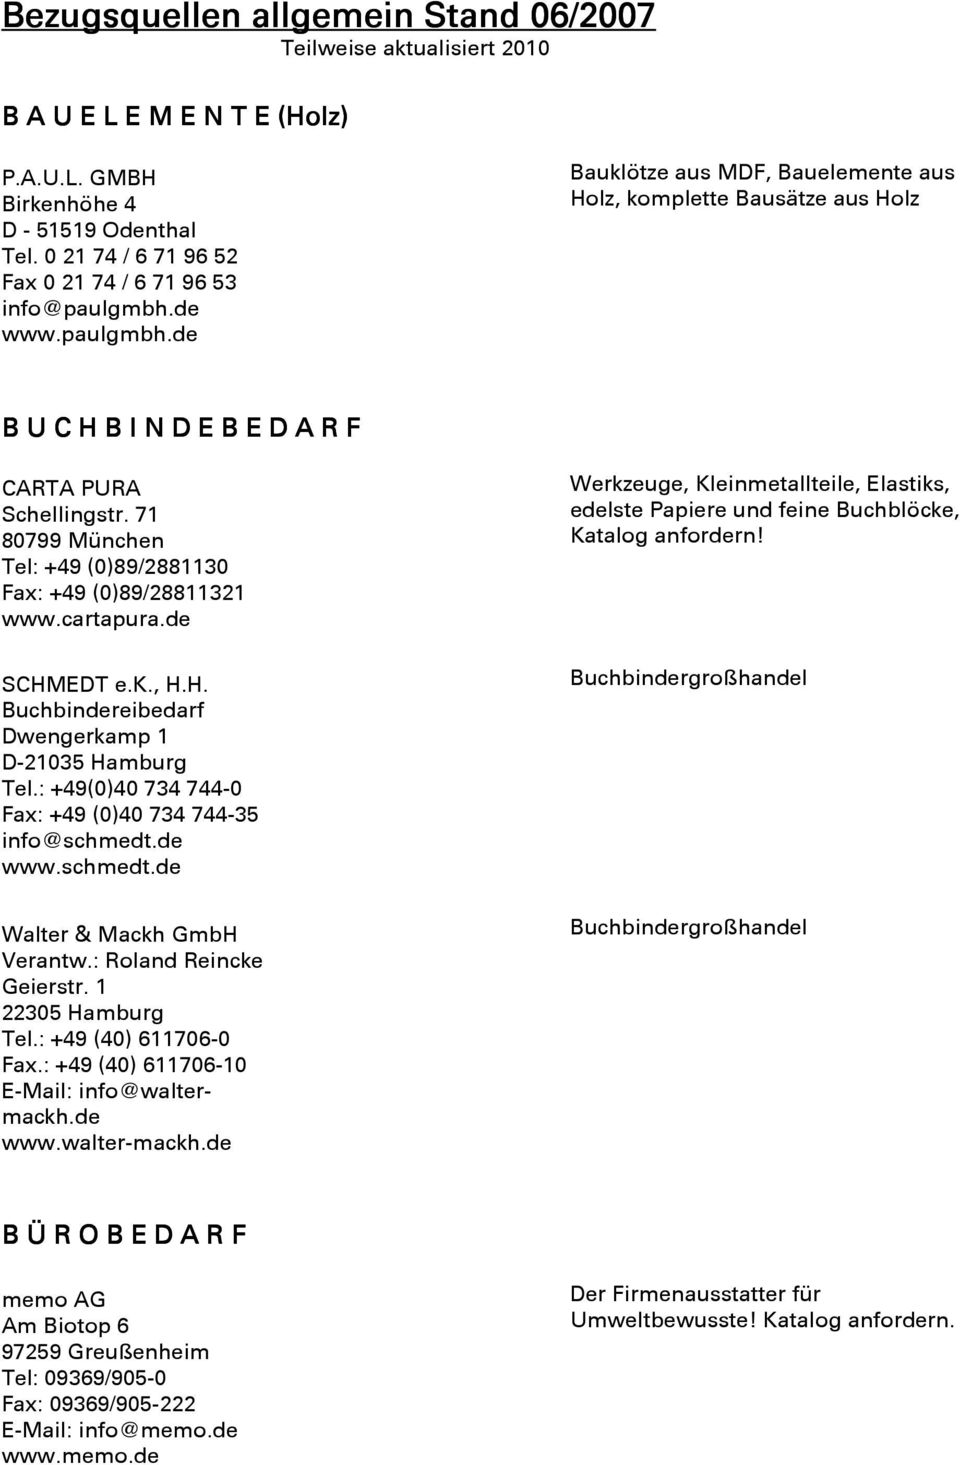 71 80799 München Tel: +49 (0)89/2881130 Fax: +49 (0)89/28811321 www.cartapura.de SCHMEDT e.k., H.H. Buchbindereibedarf Dwengerkamp 1 D-21035 Hamburg Tel.